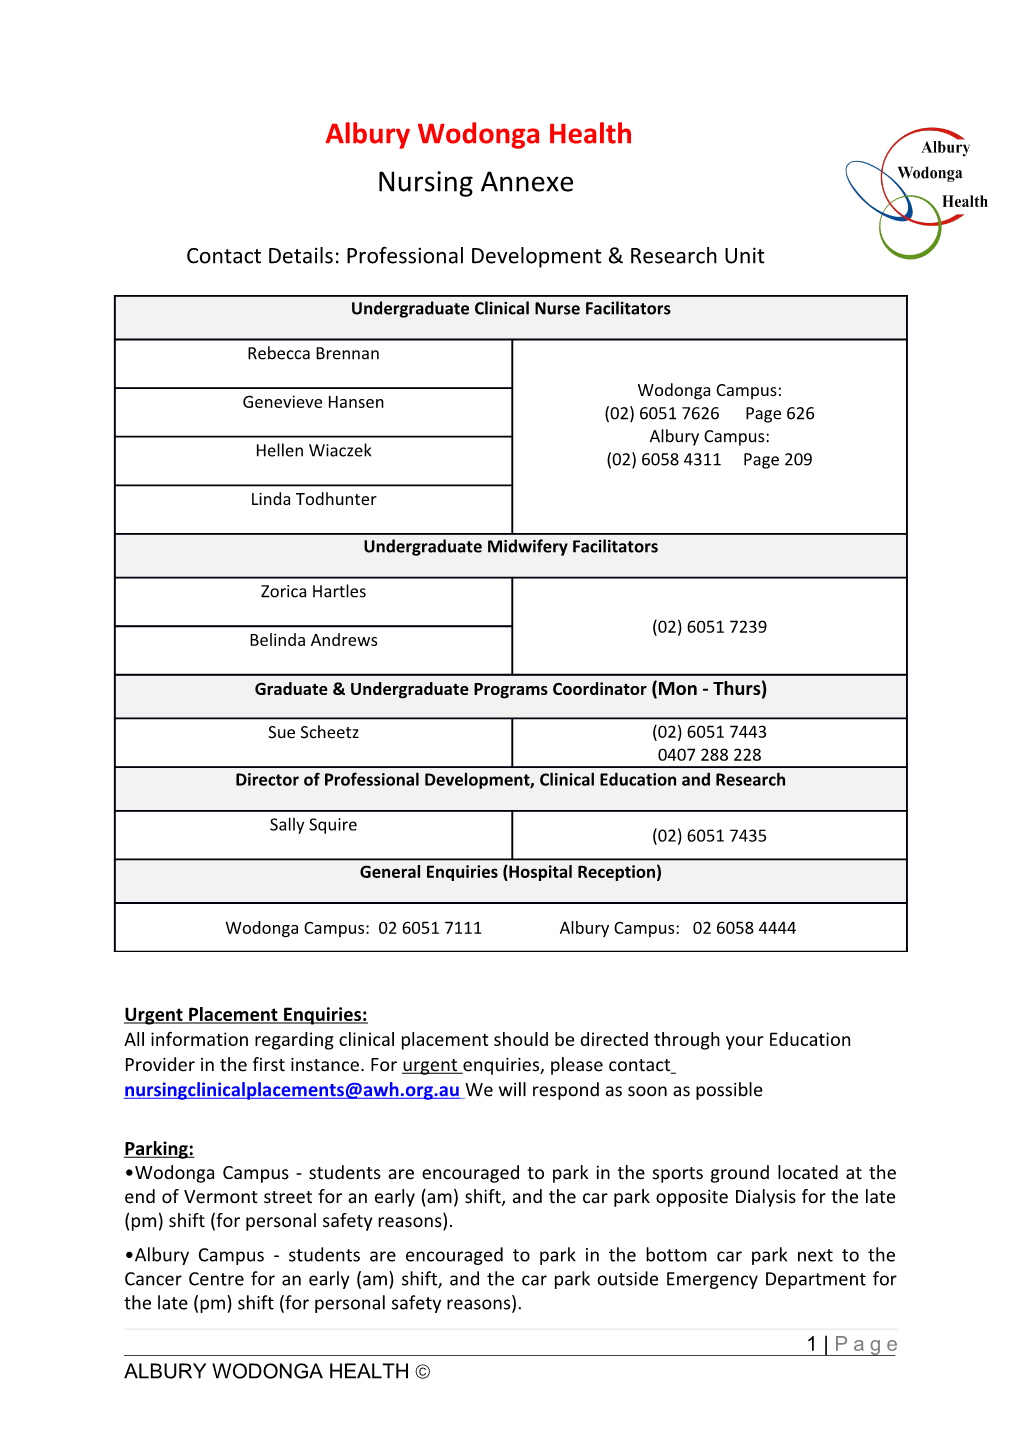 Contact Details: Professional Development & Research Unit